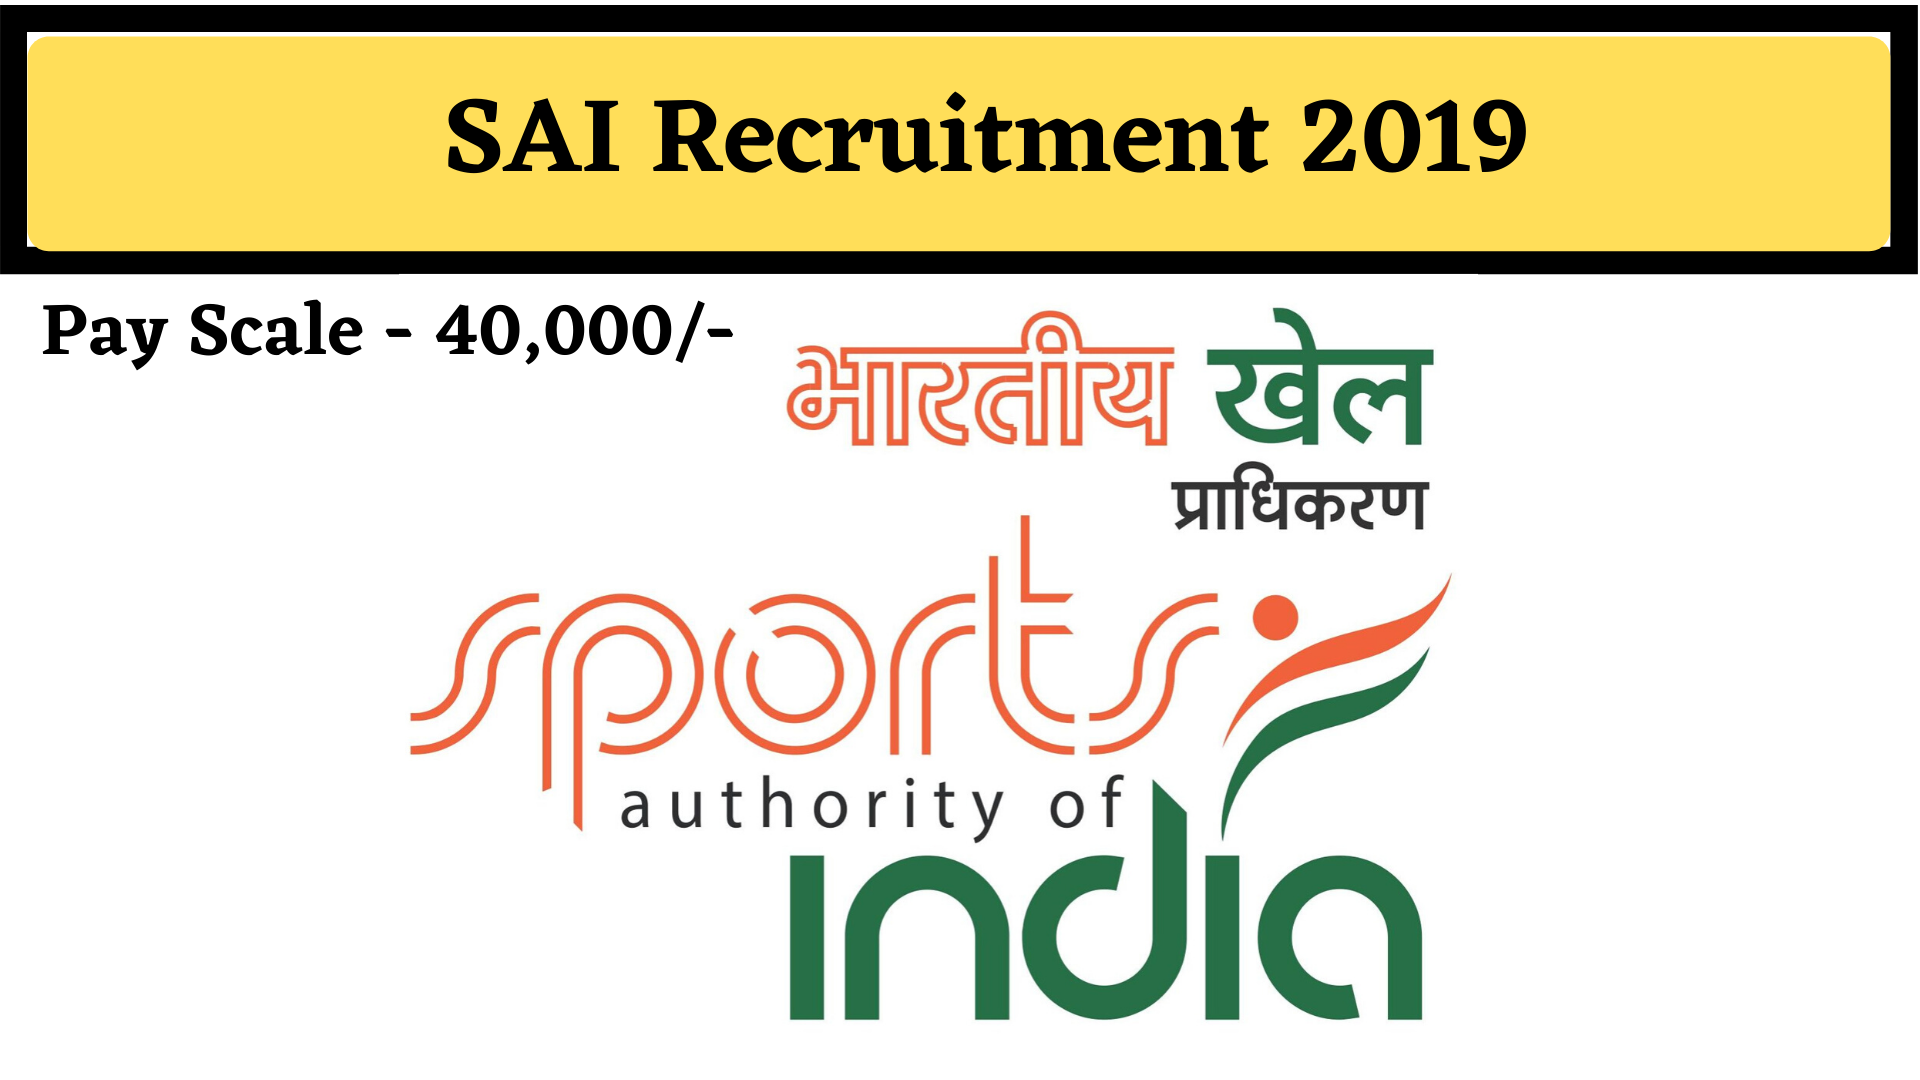 SAI RECRUITMENT 2019-20: LATEST SAI JOBS | SPORTS AUTHORITY OF INDIA RECRUITMENT